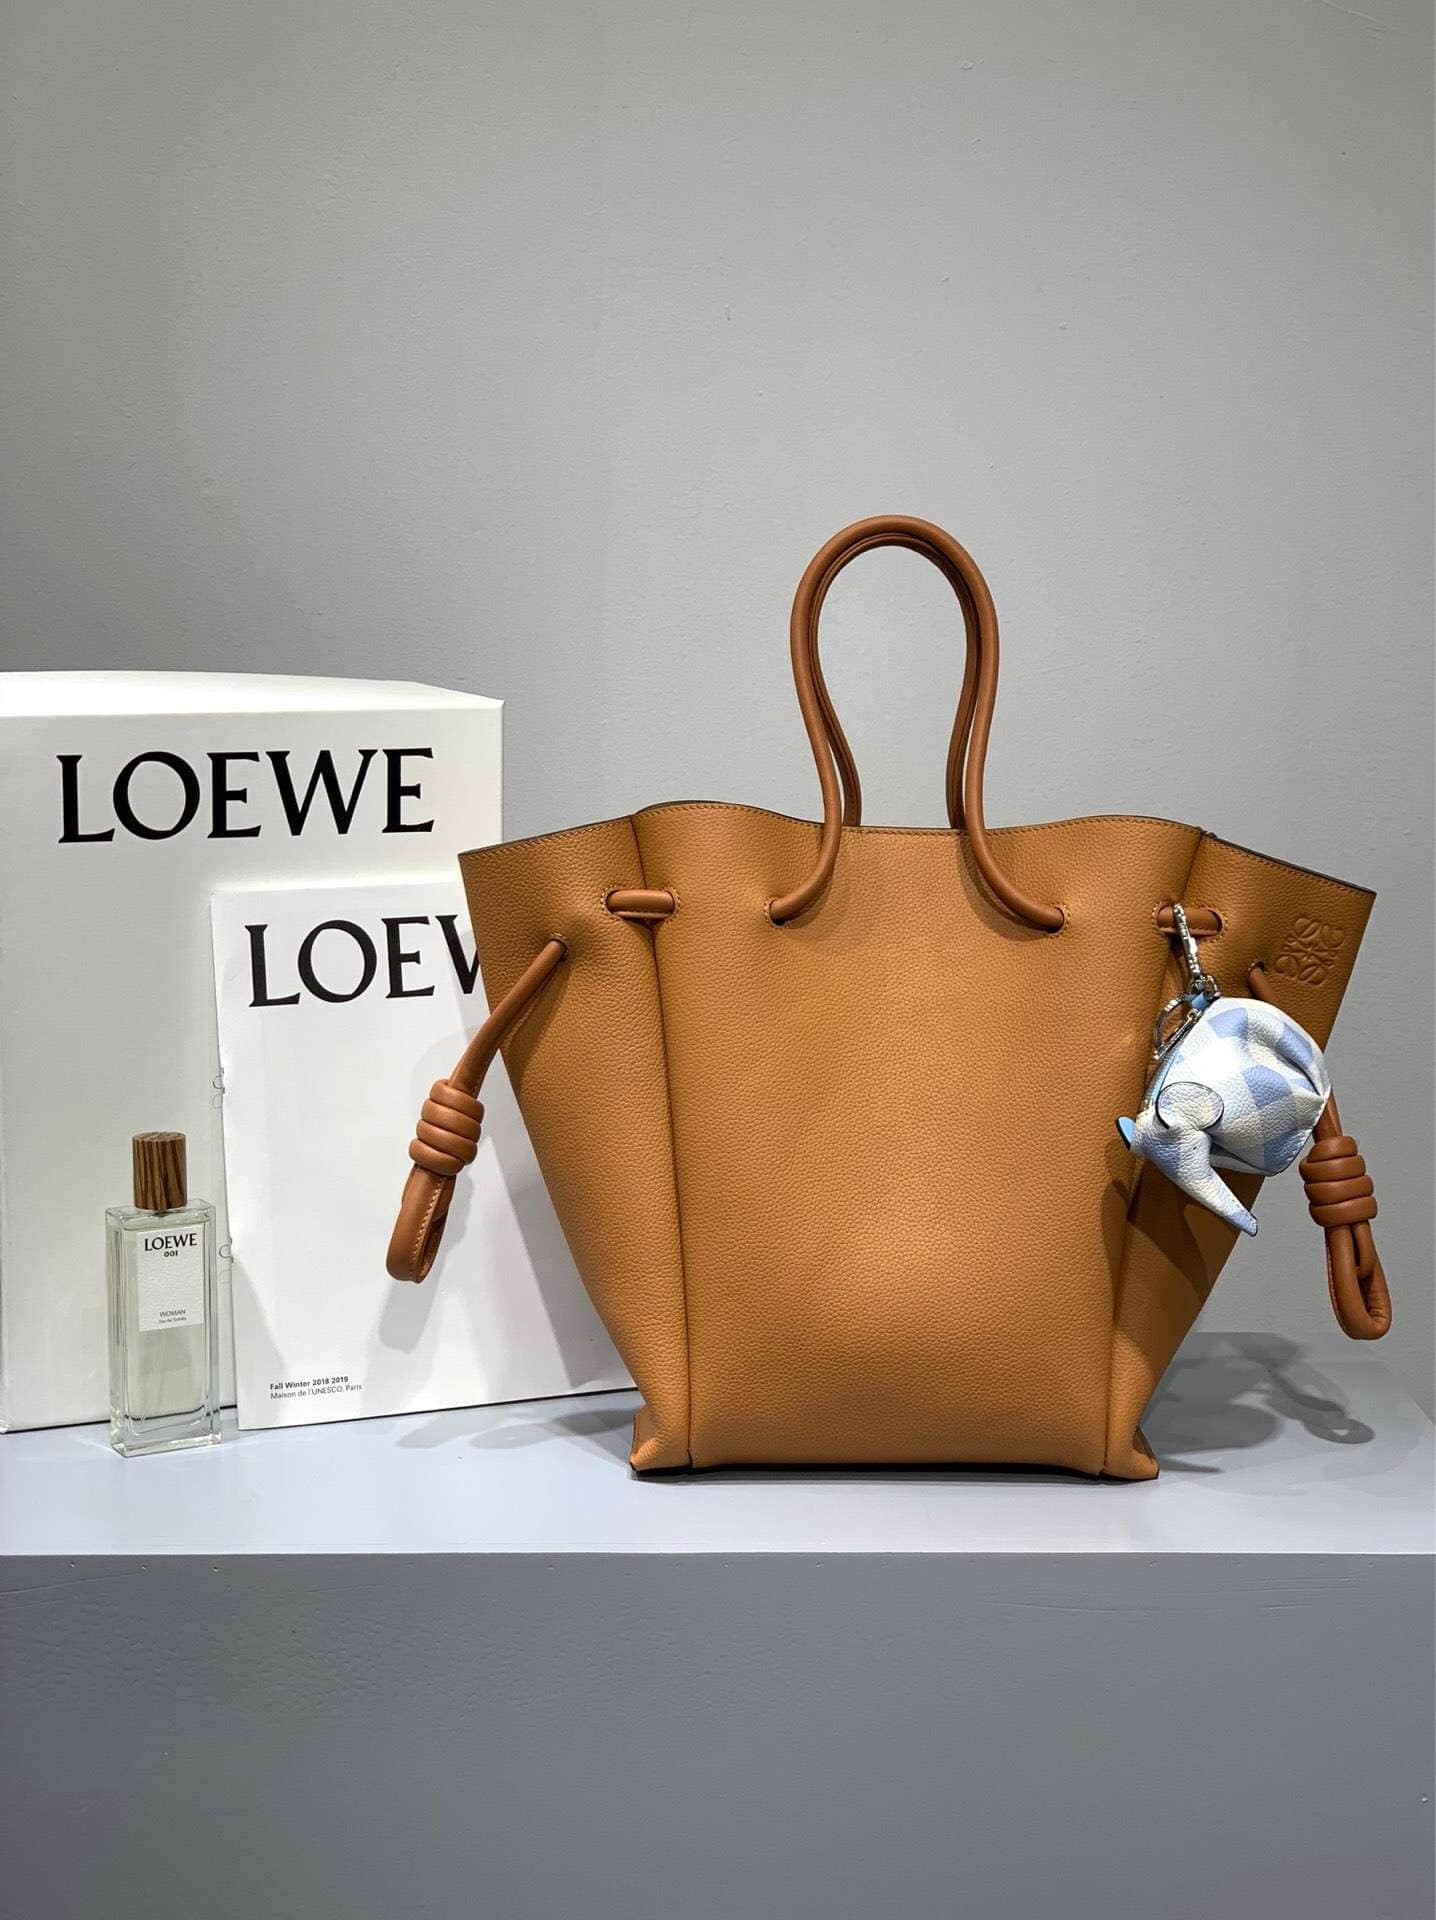 高仿罗意威女士购物袋 罗意威女士购物袋 Loewe/罗意威 呛口小辣椒同款 Flamenco Knot Tote Small Bag 